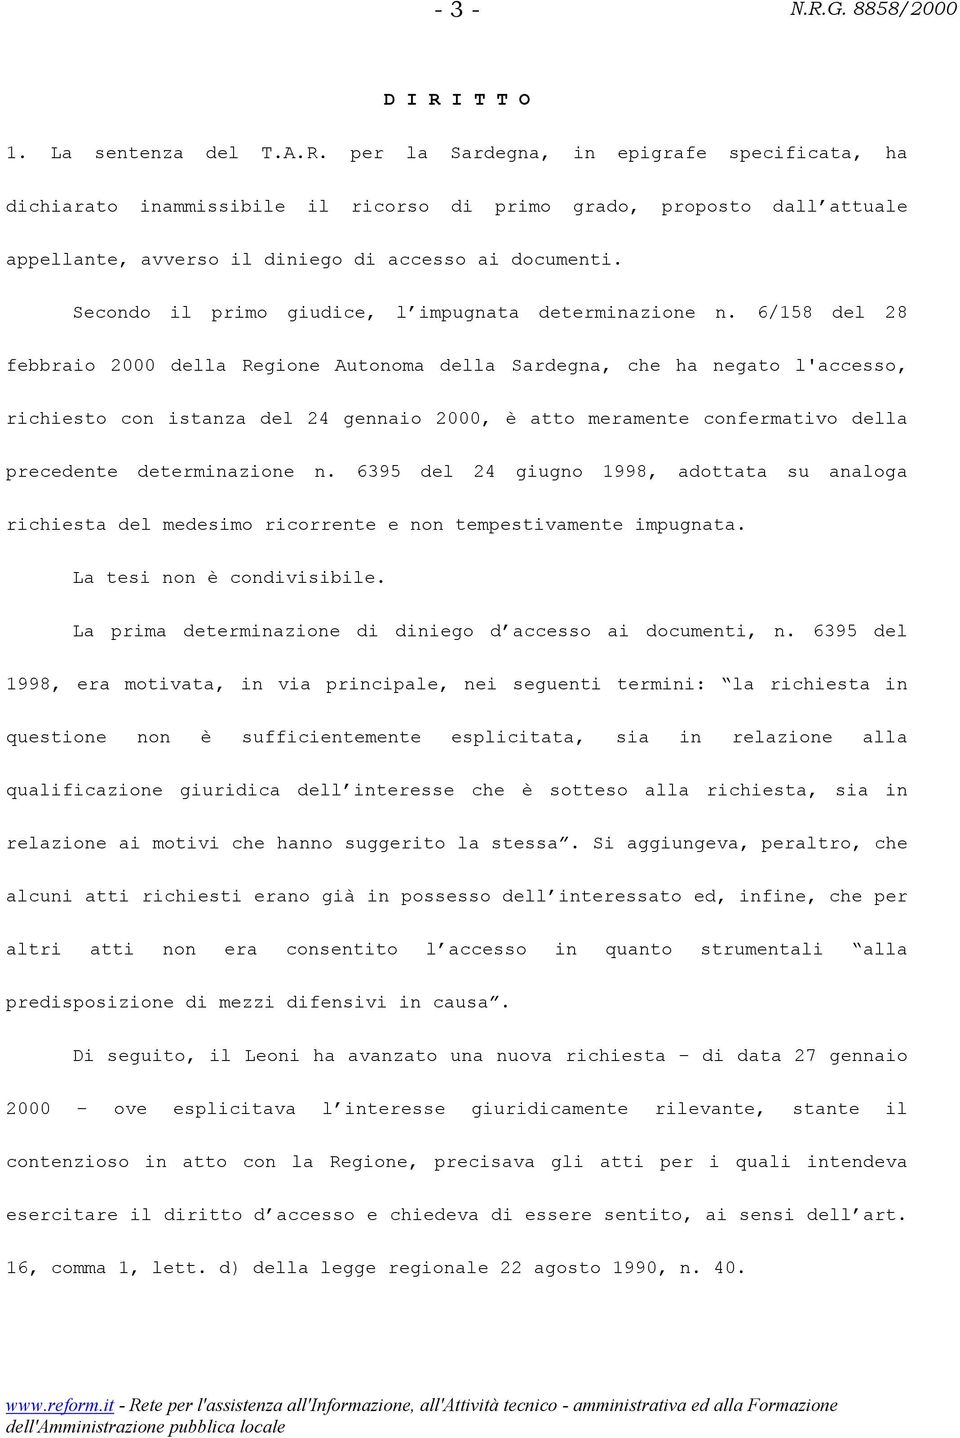 6/158 del 28 febbraio 2000 della Regione Autonoma della Sardegna, che ha negato l'accesso, richiesto con istanza del 24 gennaio 2000, è atto meramente confermativo della precedente determinazione n.